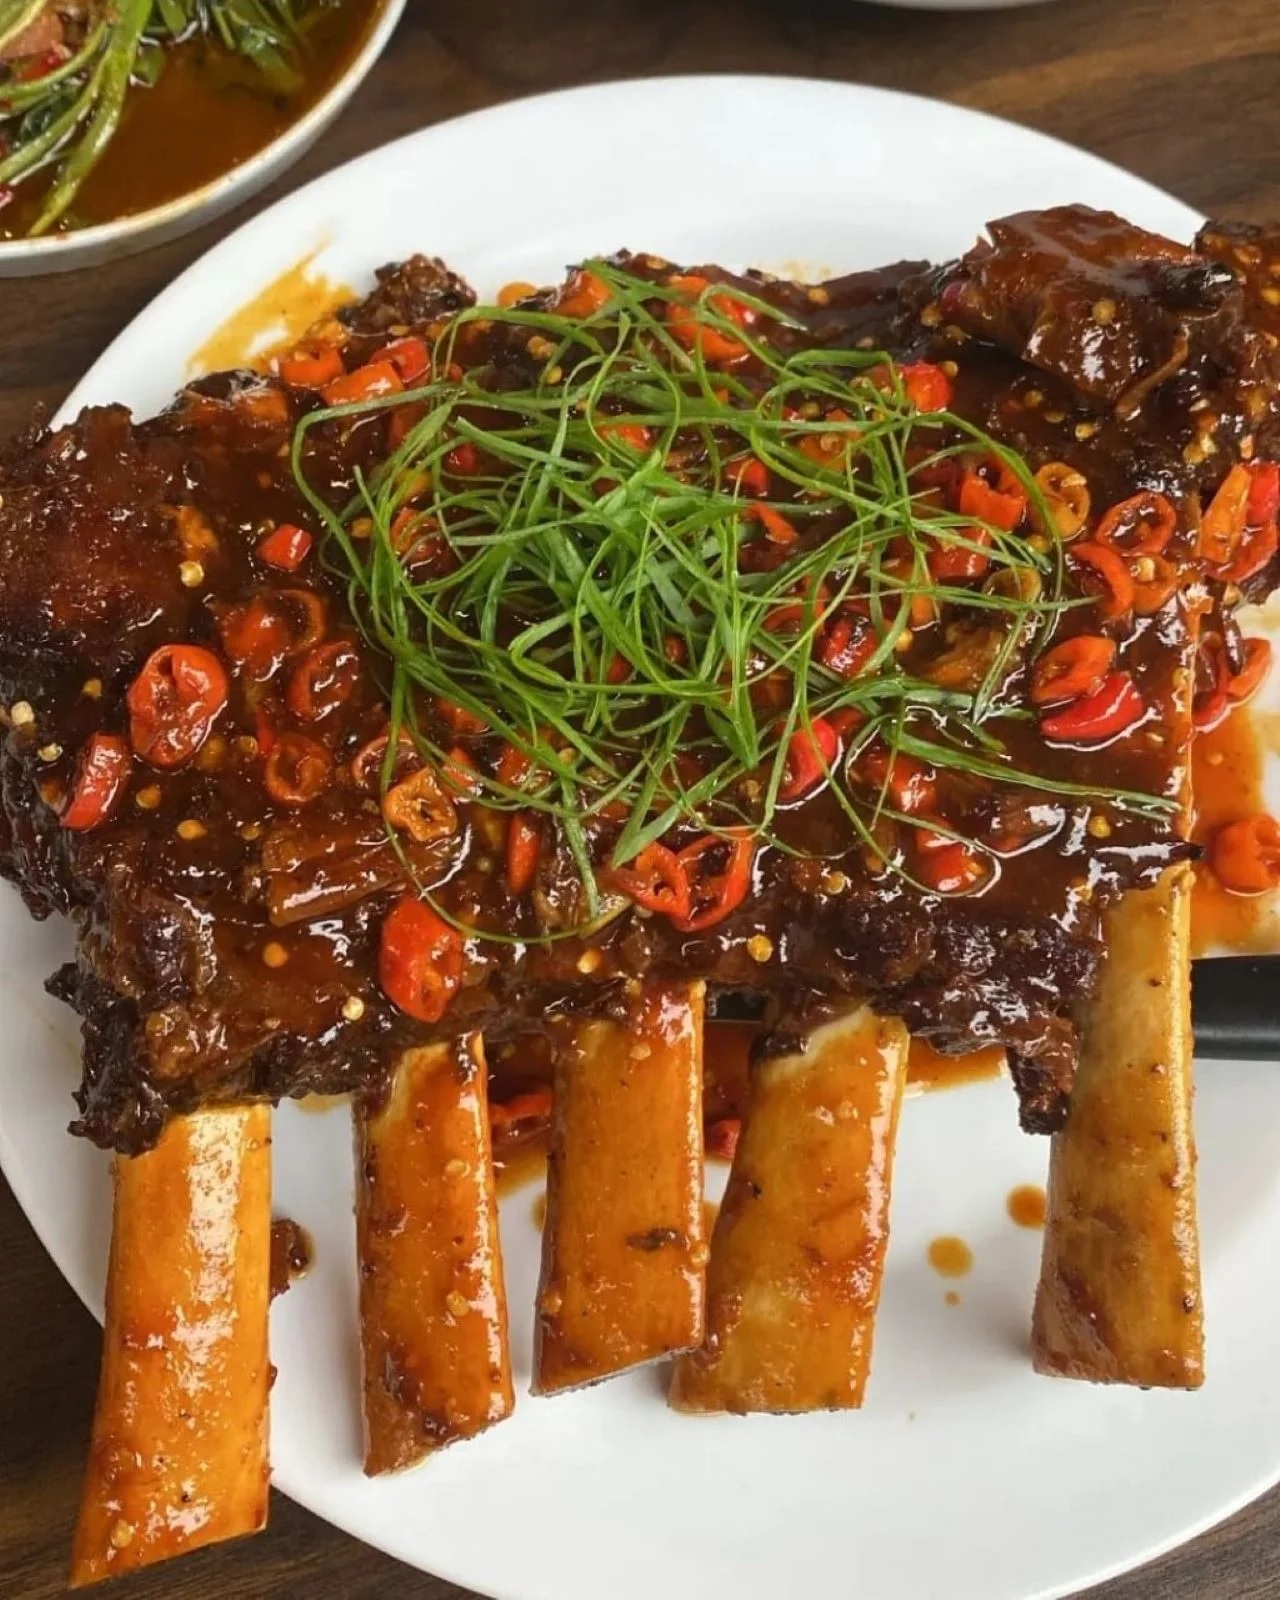 Kota Kembang Bandung Surganya Kuliner Indonesia, Food Vlogger Wajib Coba 6 Rekomendasi Makanan Ini